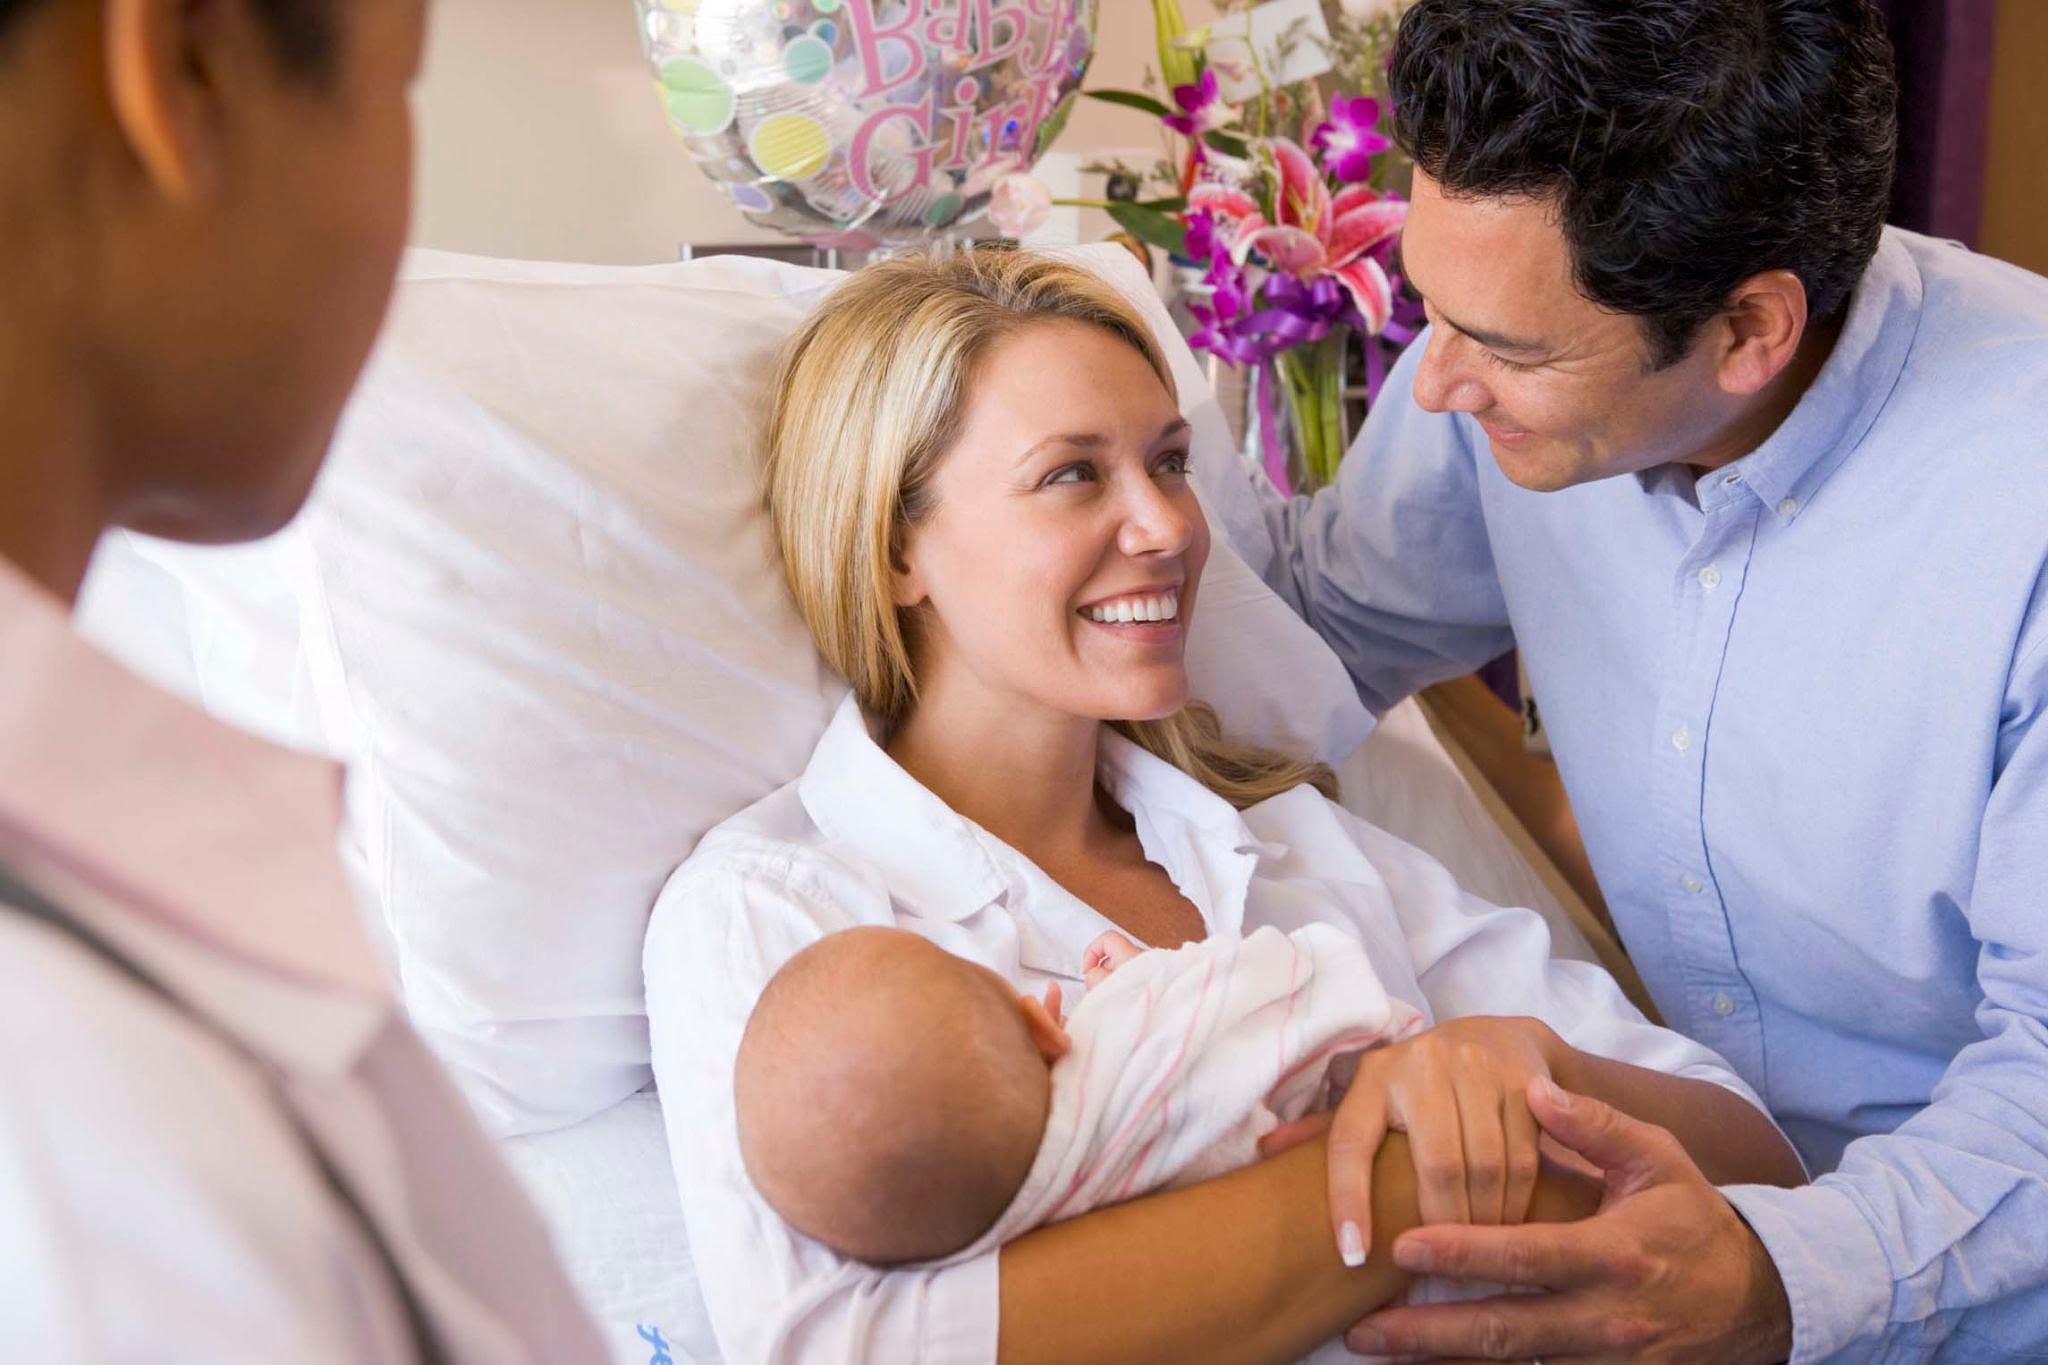 Yeni Doğum Yapan Anneye Hediye Önerileri